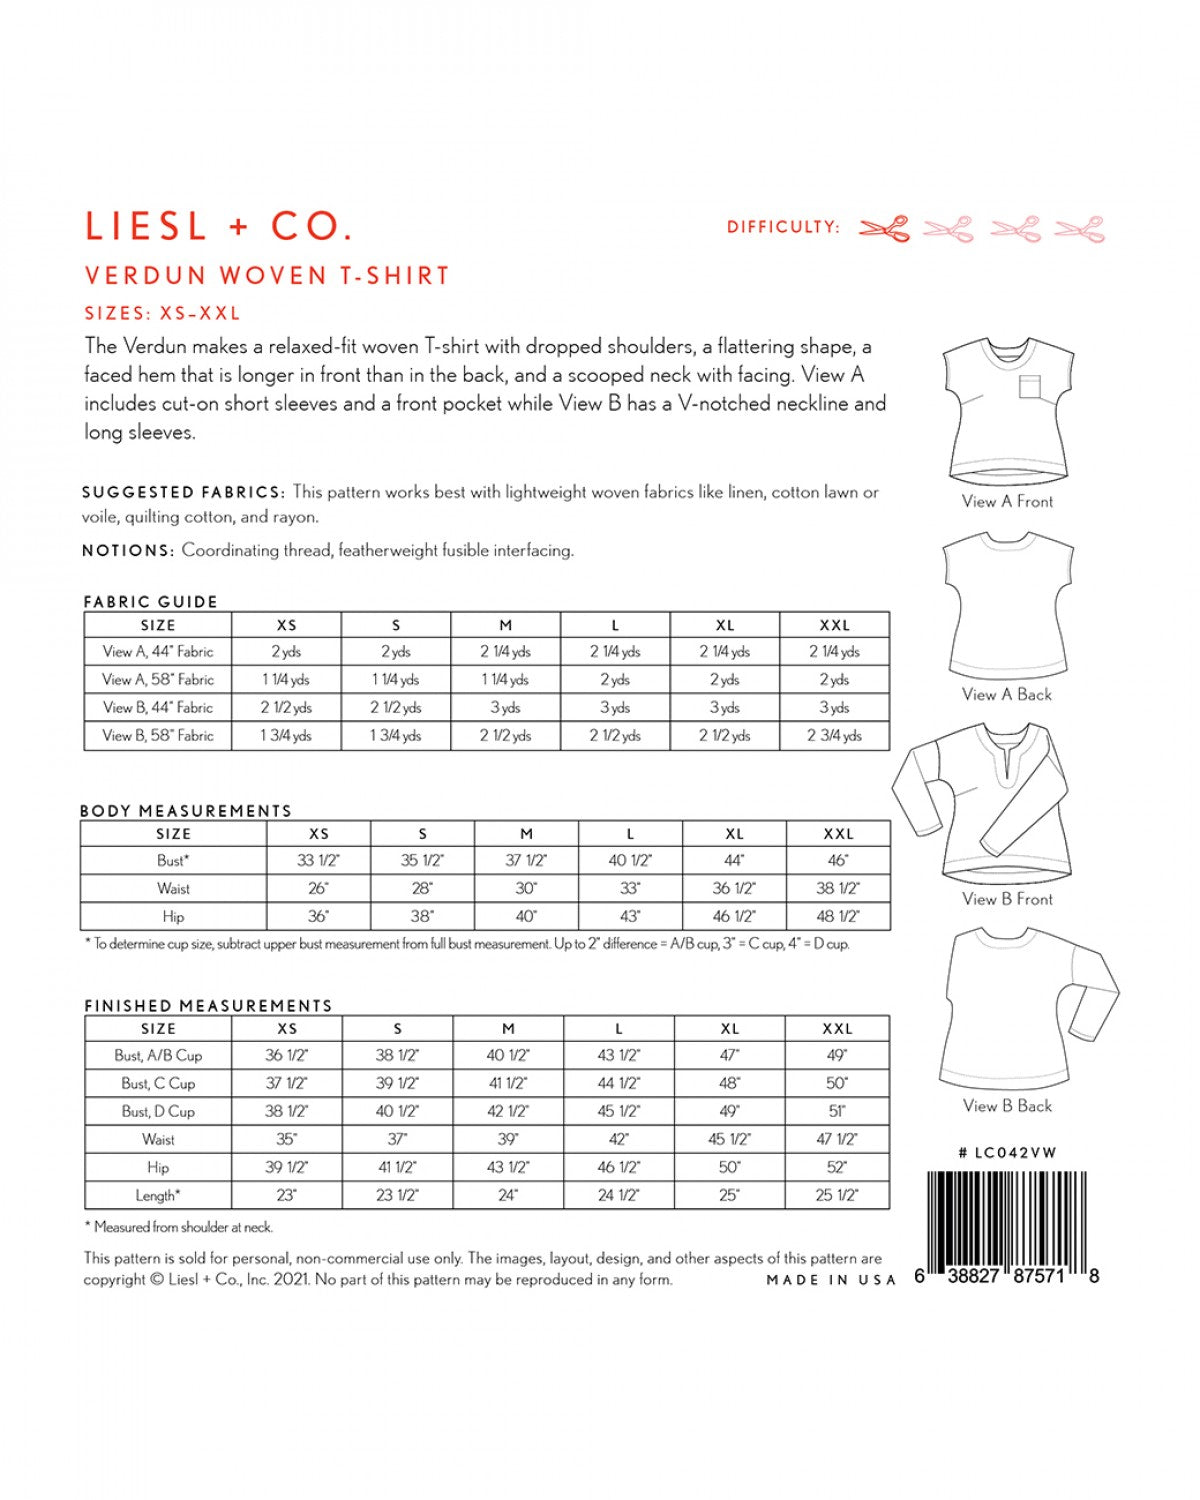 Liesl + Co - Verdun Woven T-Shirt Sewing Pattern